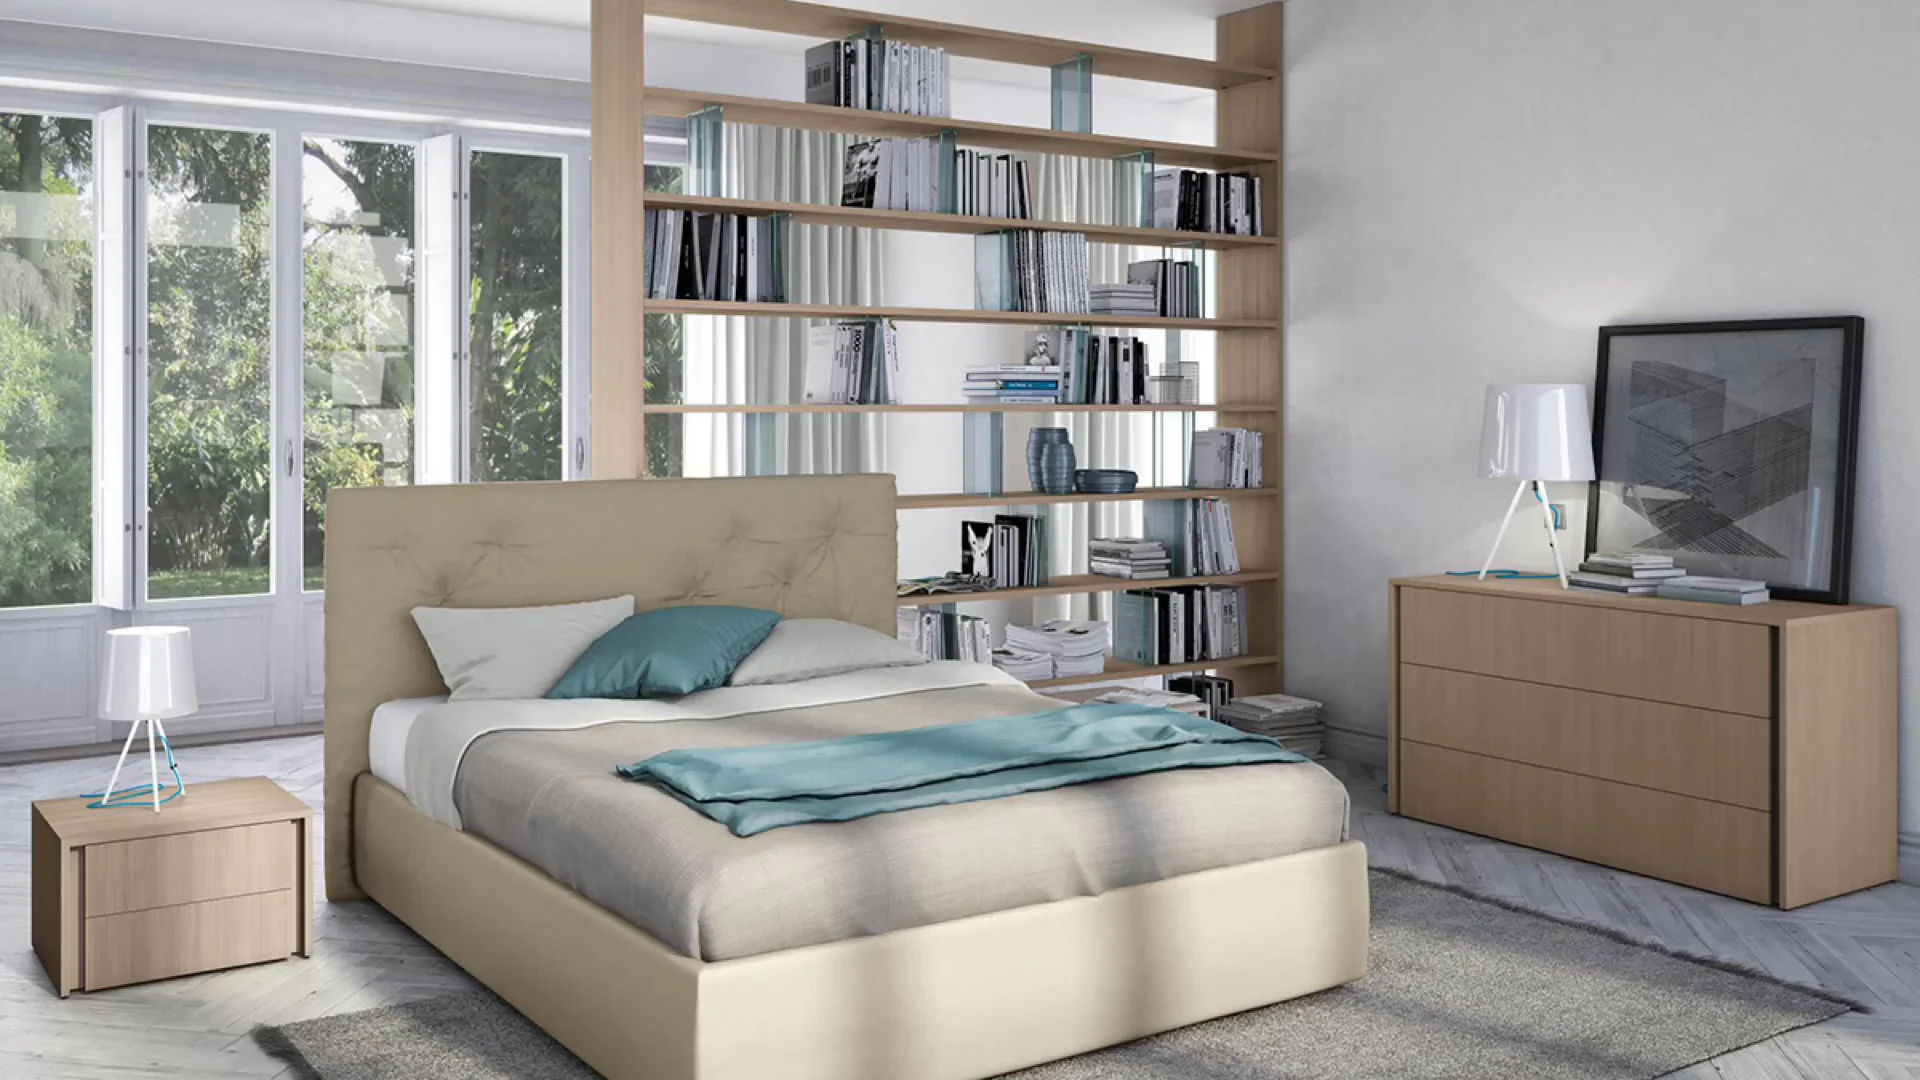 Wholesale Wooden Bedroom Sets 20eaa006 Queen Size Bed Bedroom Furniture - Buy Bedroom Furniture